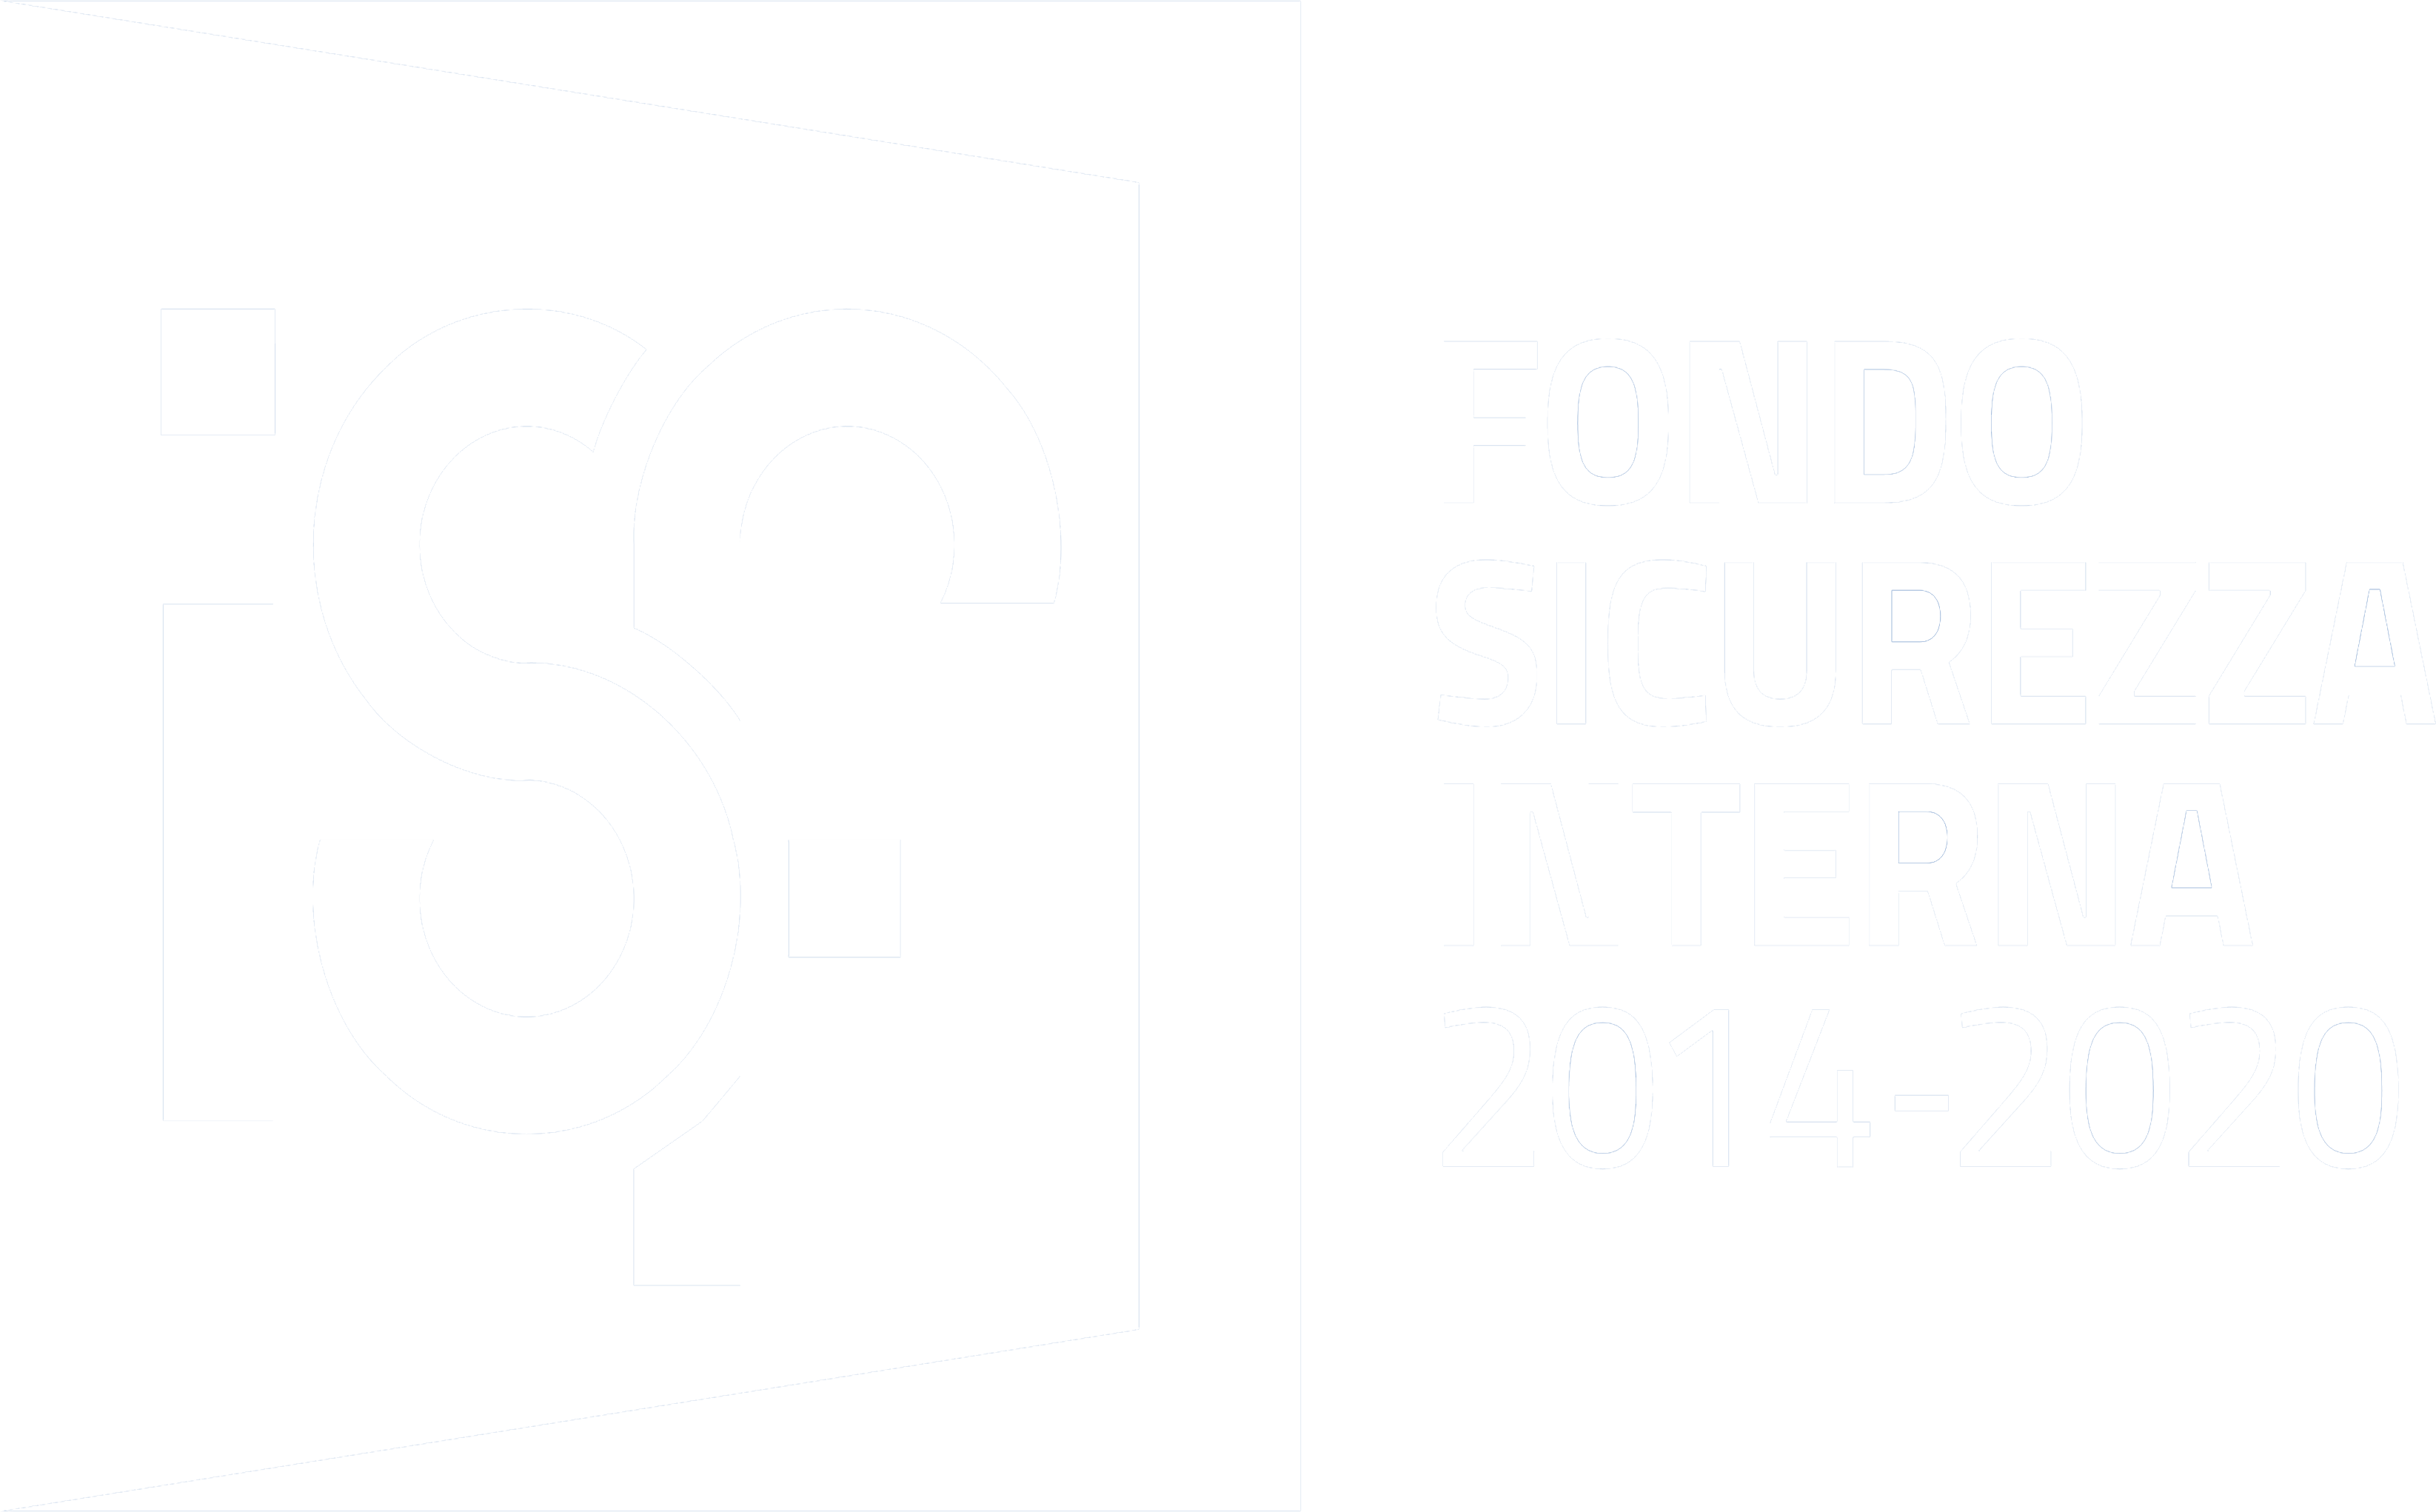 Fondo Sicurezza Interna 2014-2020